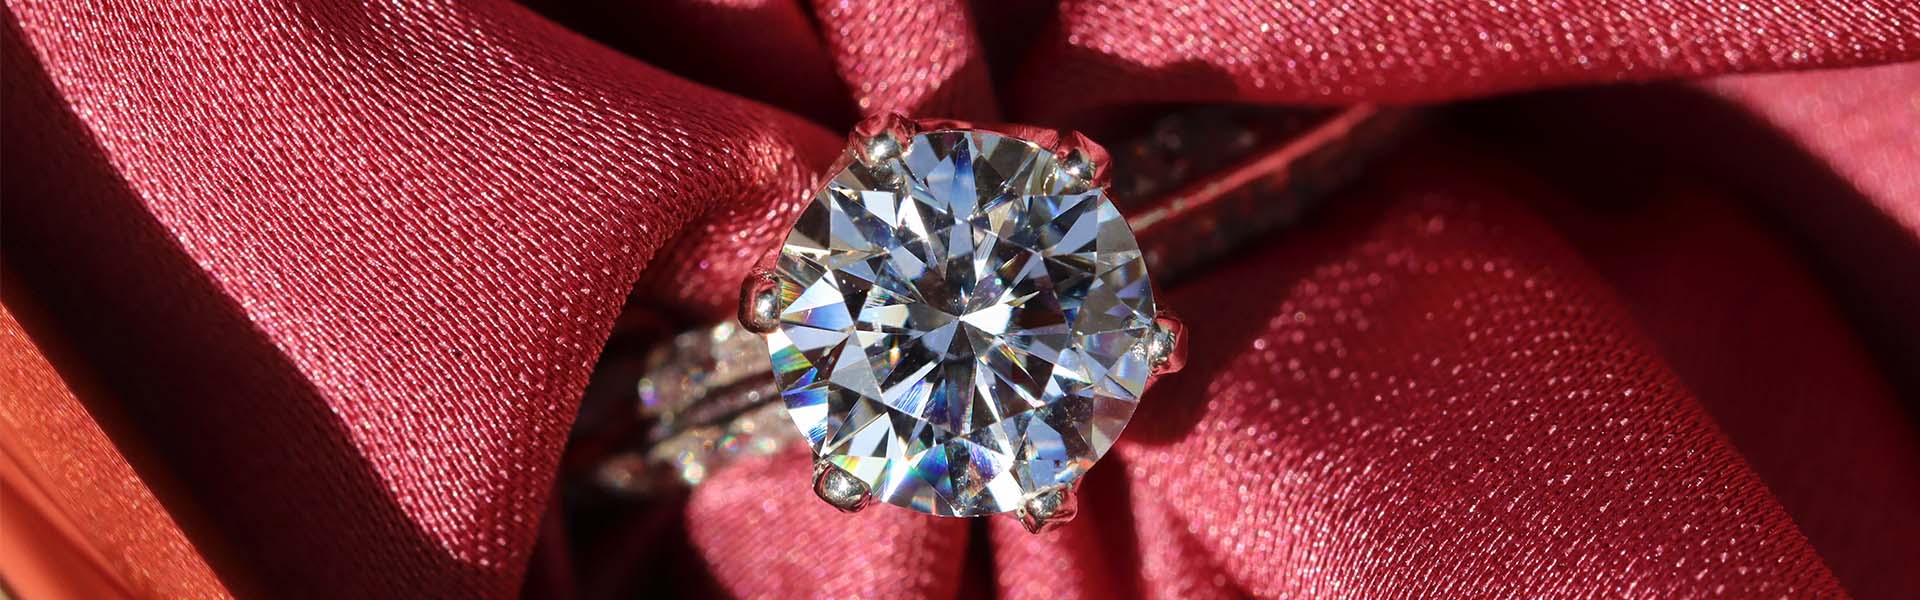 10 cosas increíbles que no sabías sobre los diamantes